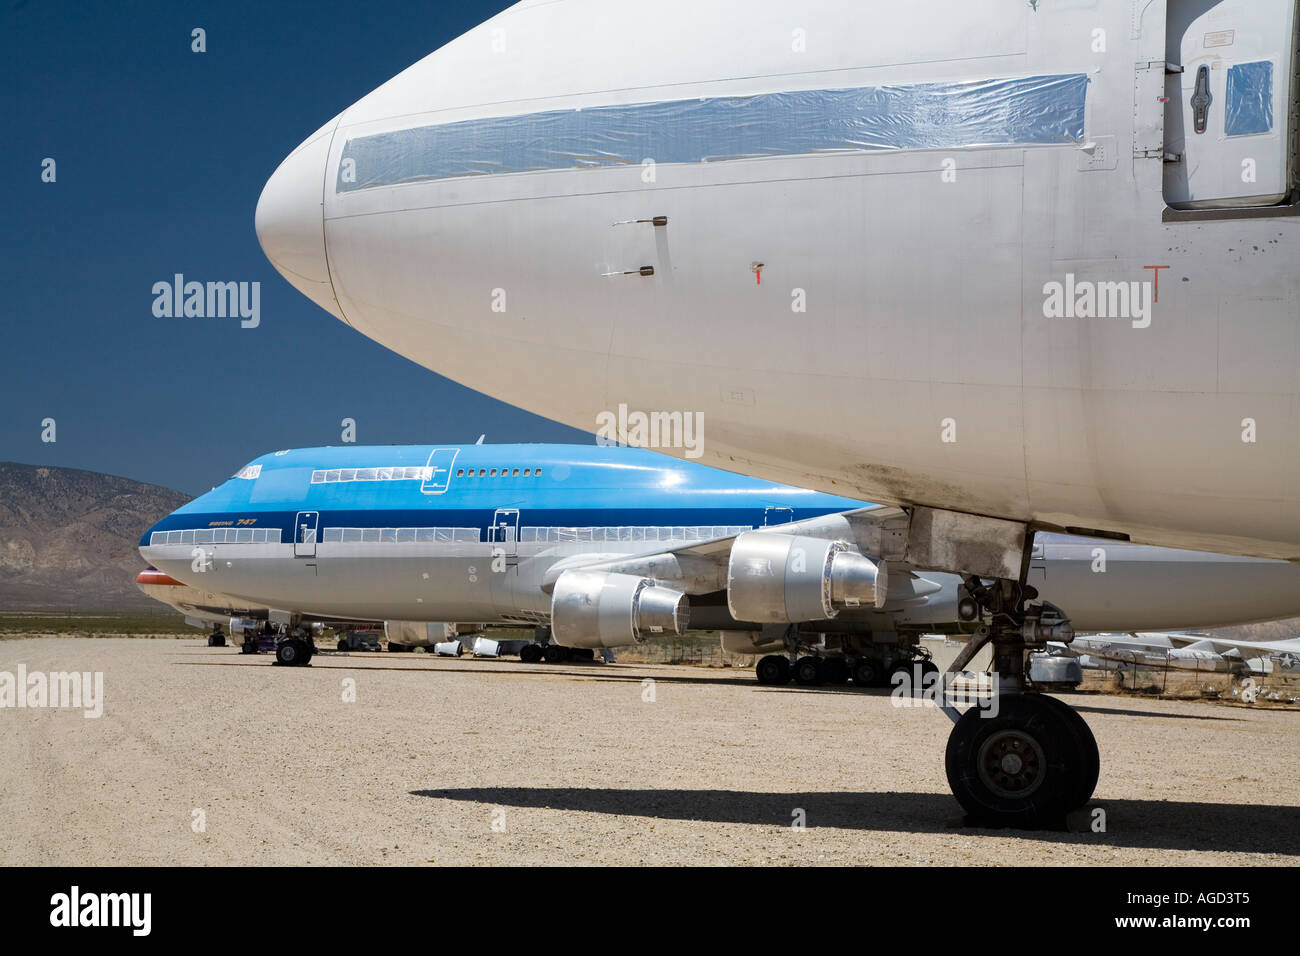 Avions de Mojave en Californie en excédent de stockage à l'aéroport de Mojave en Californie, désert de Mojave Banque D'Images